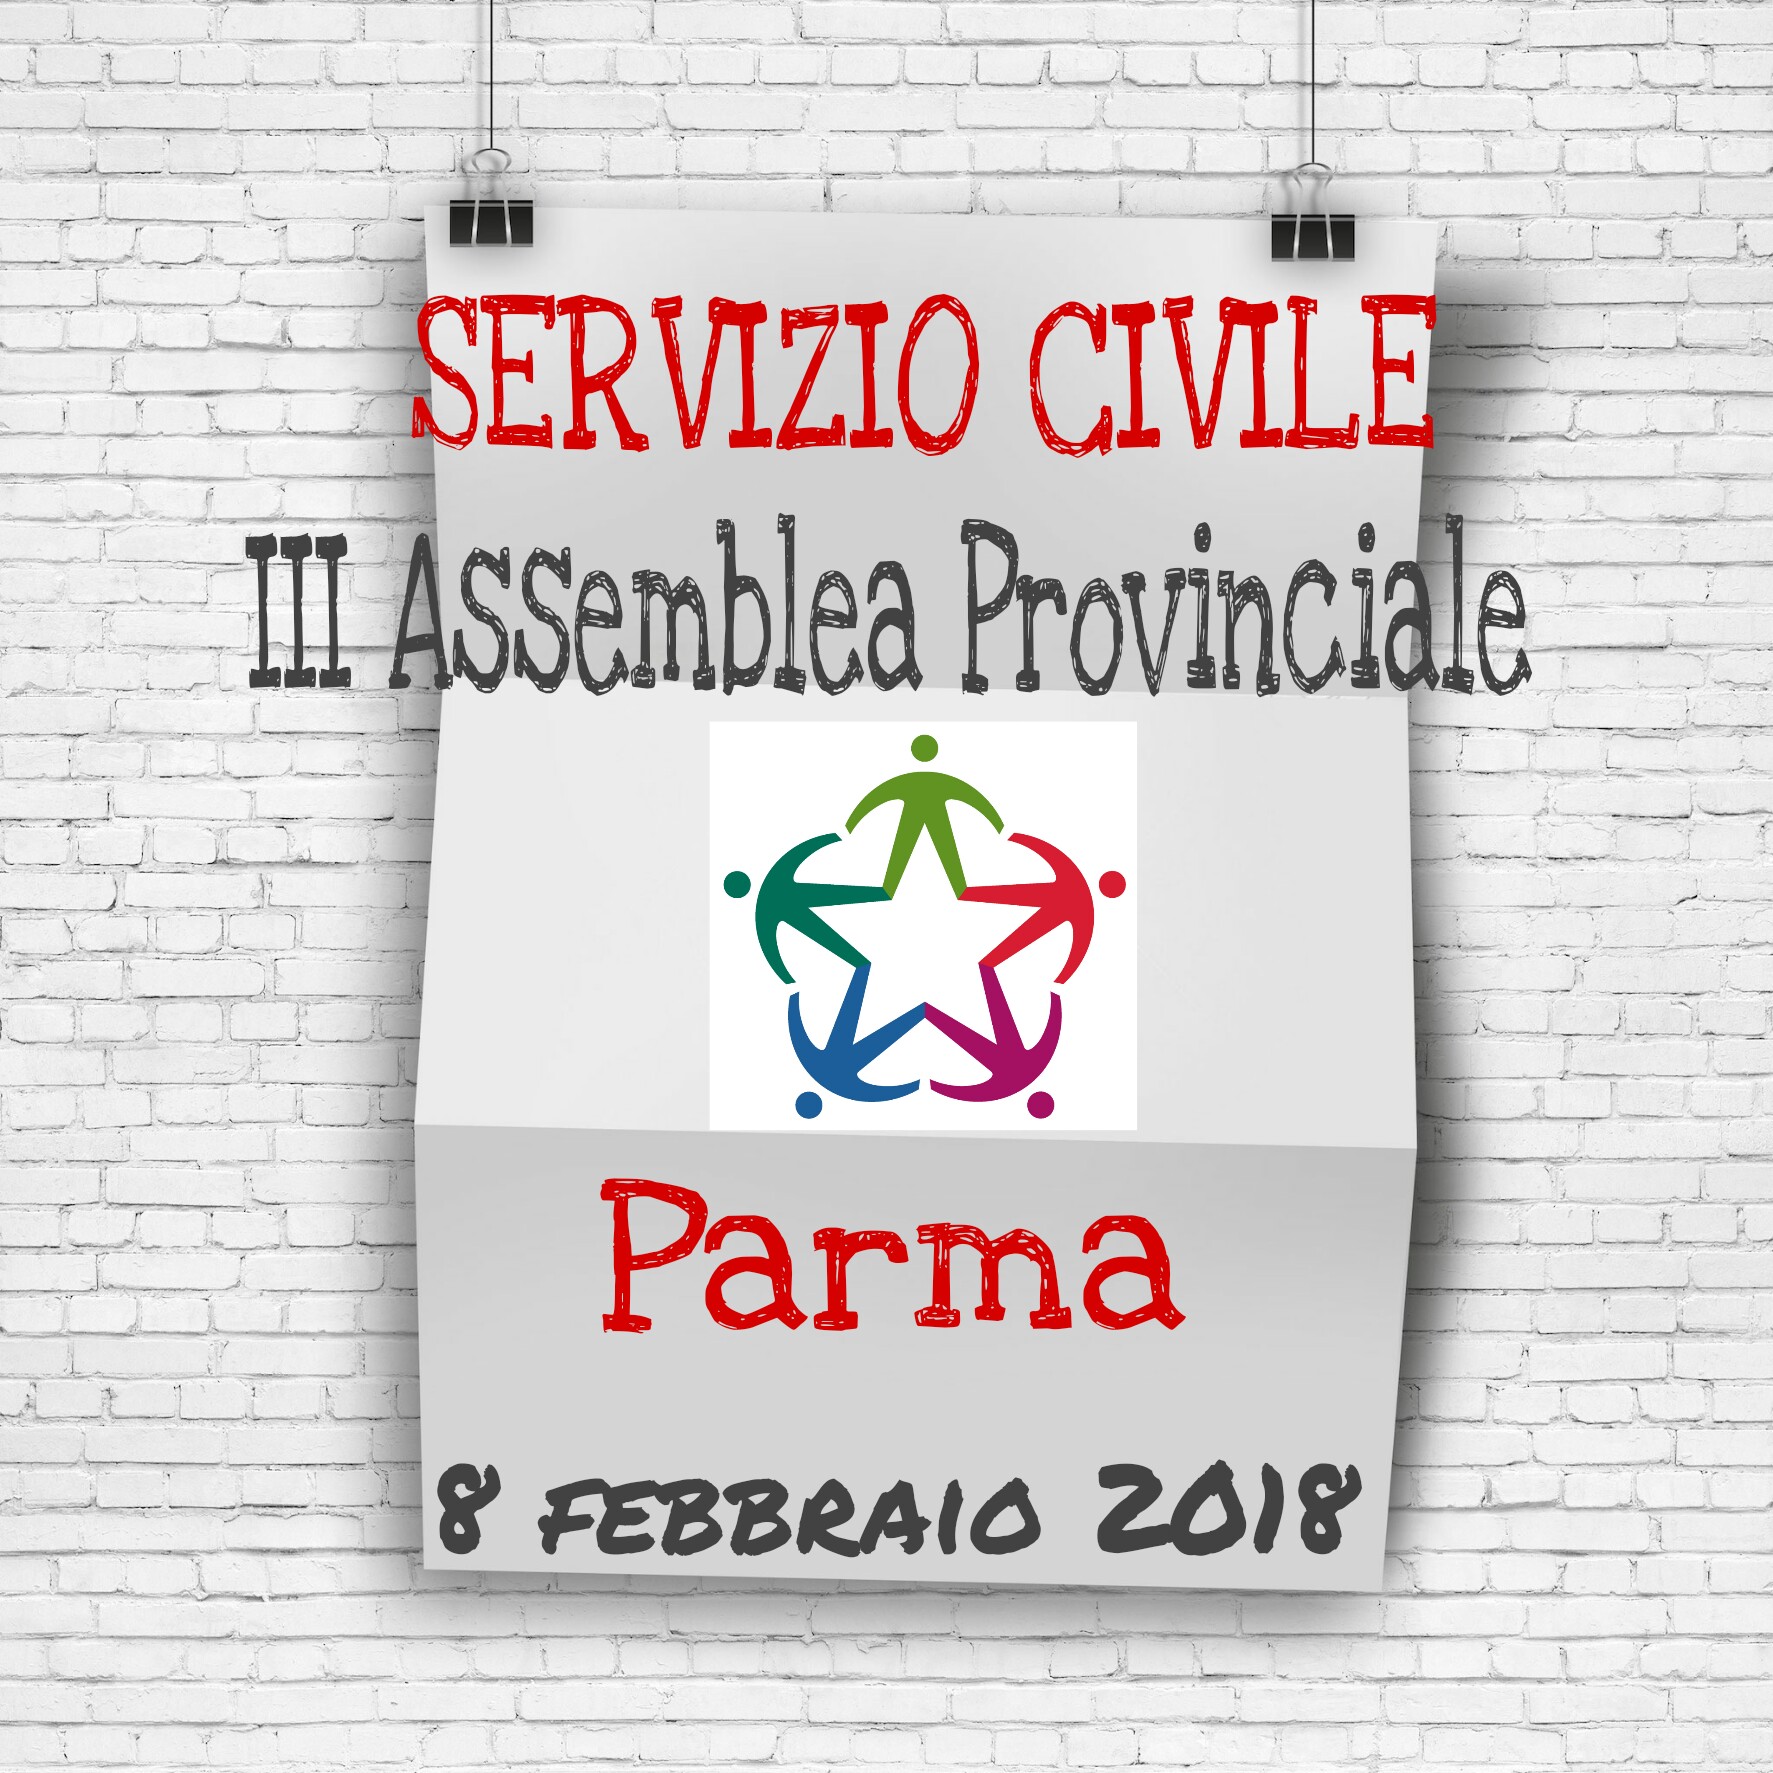 https://www.serviziocivileparma.it/web/iii-assemblea-provinciale-del-servizio-civile-a-parma/